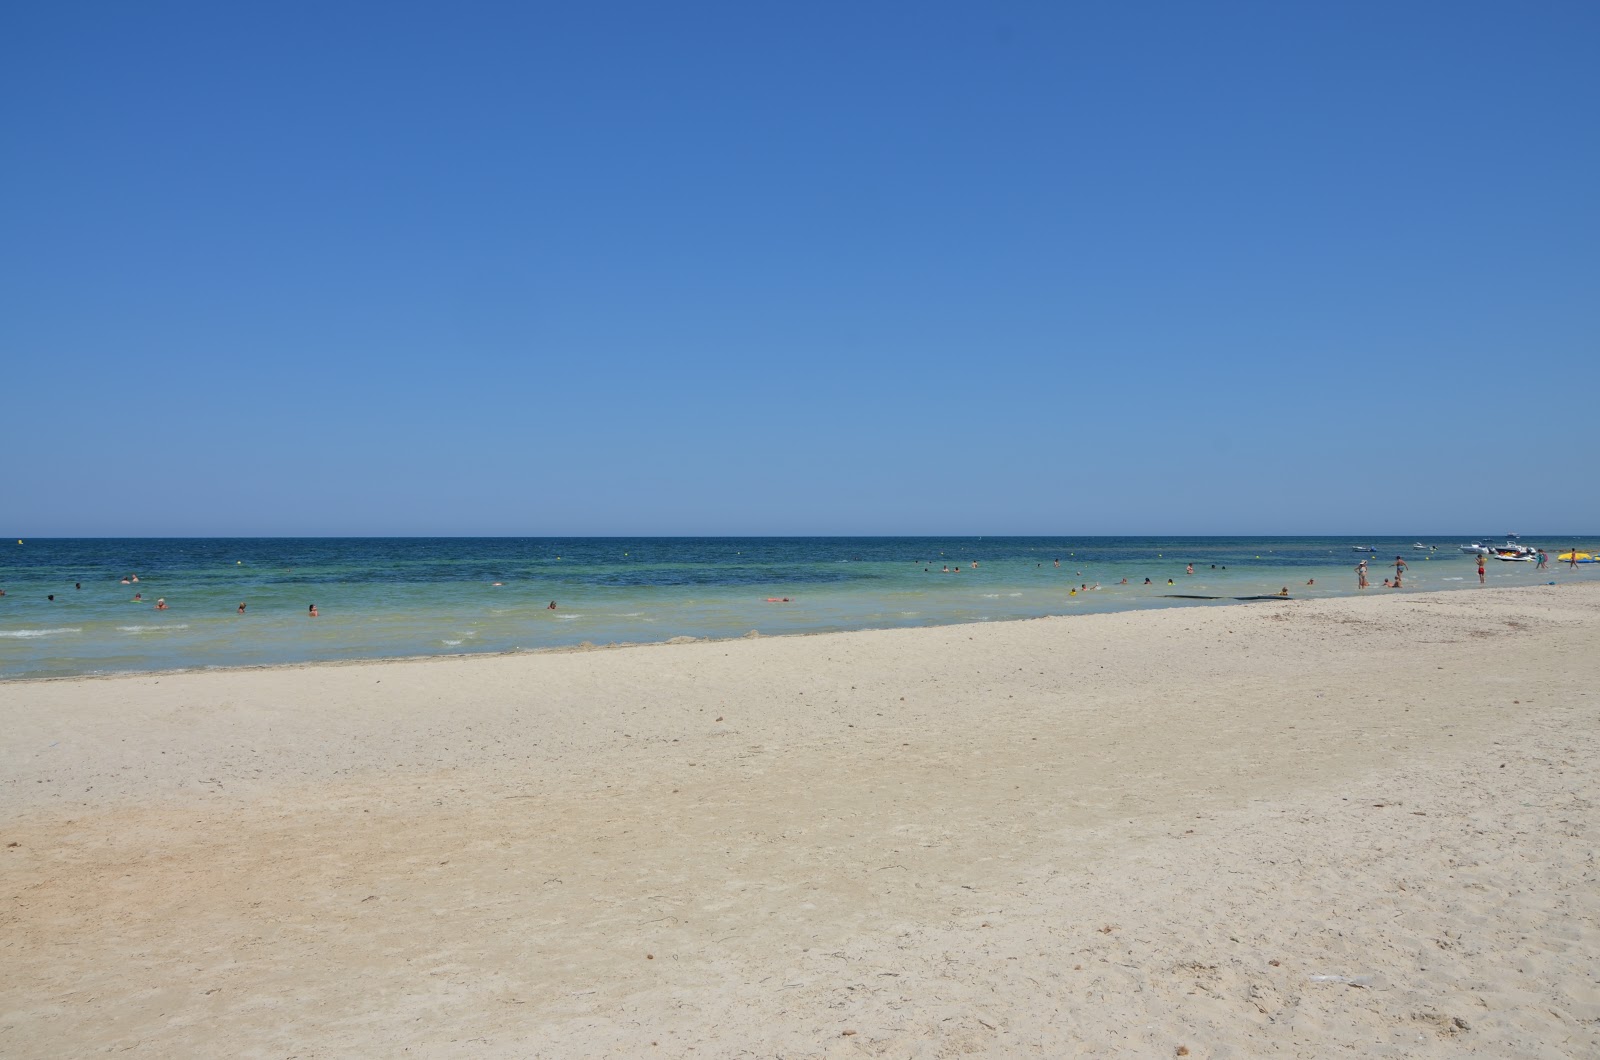 Zdjęcie Sangho beach - popularne miejsce wśród znawców relaksu